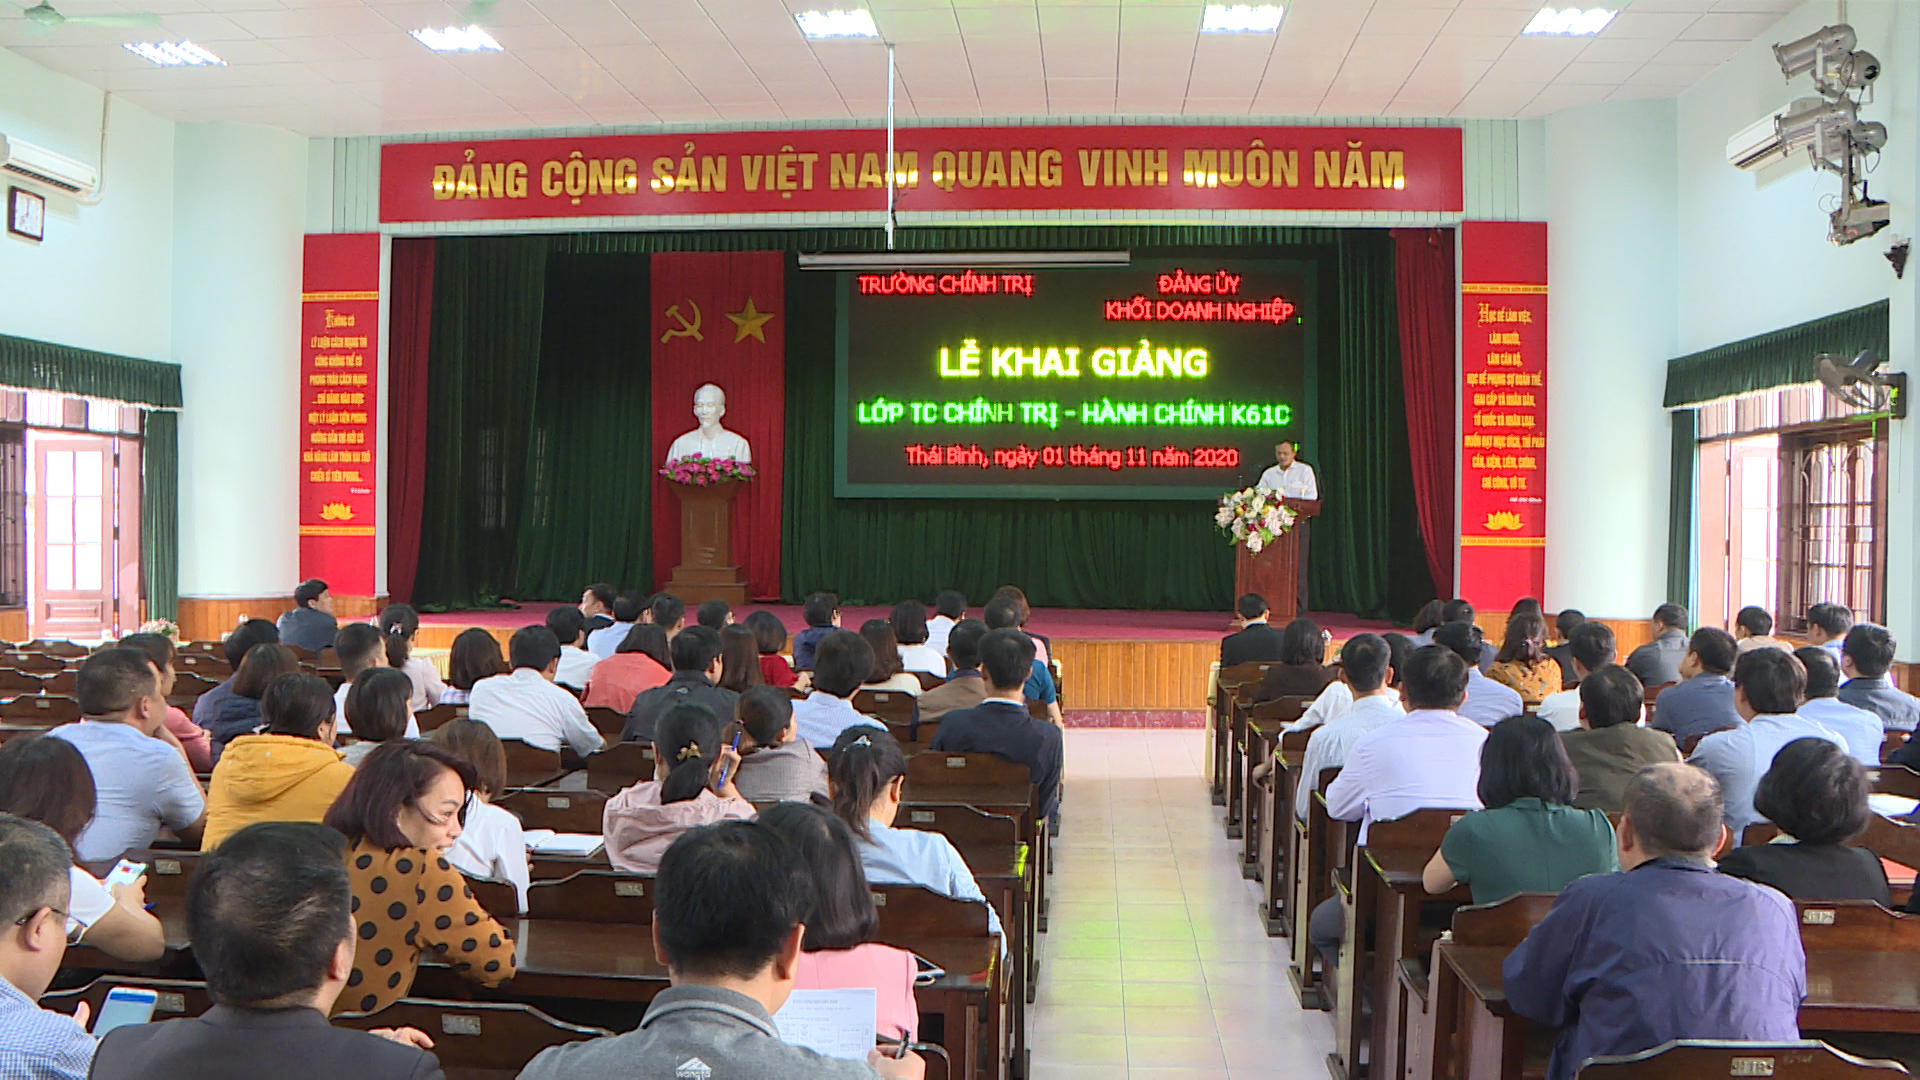 Khai giảng lớp trung cấp Chính trị - Hành chính cho các đảng viên khối Doanh nghiệp Thái Bình